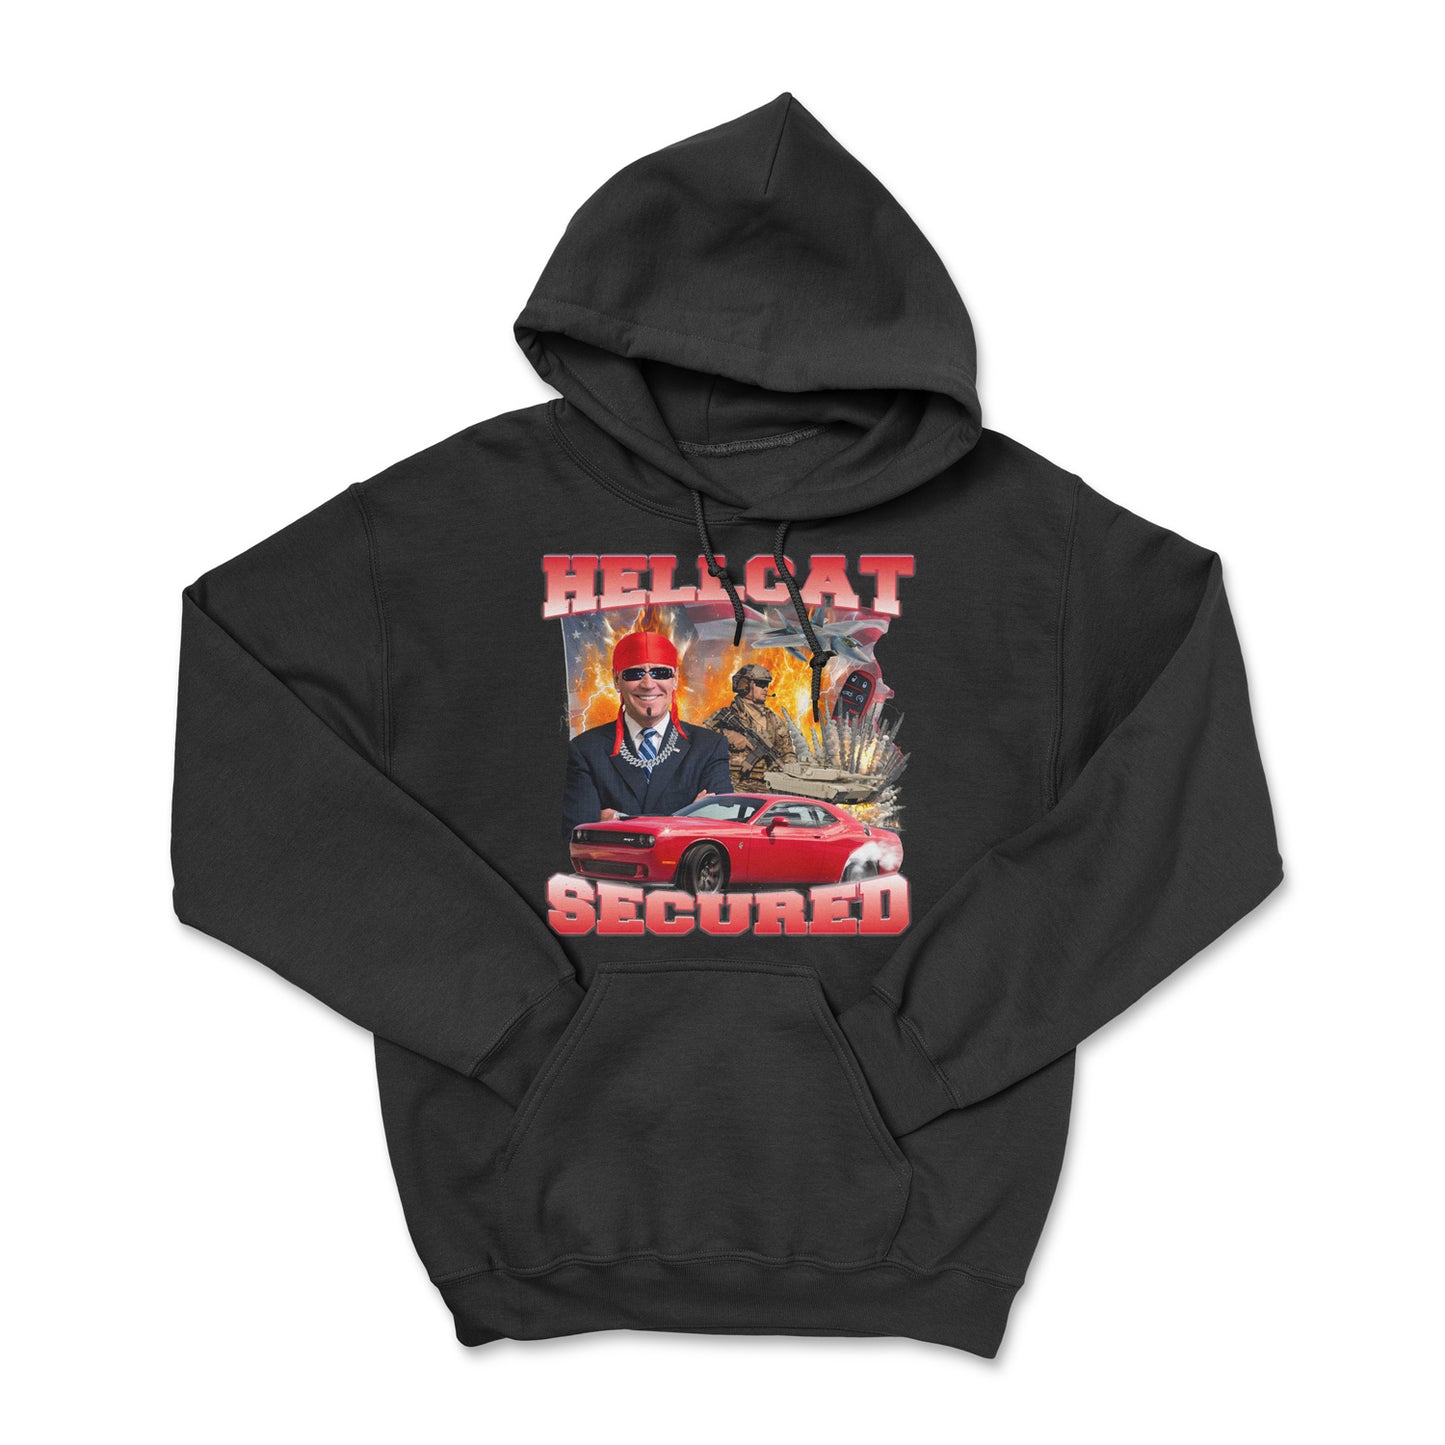 Hellcat Secured Hoodie